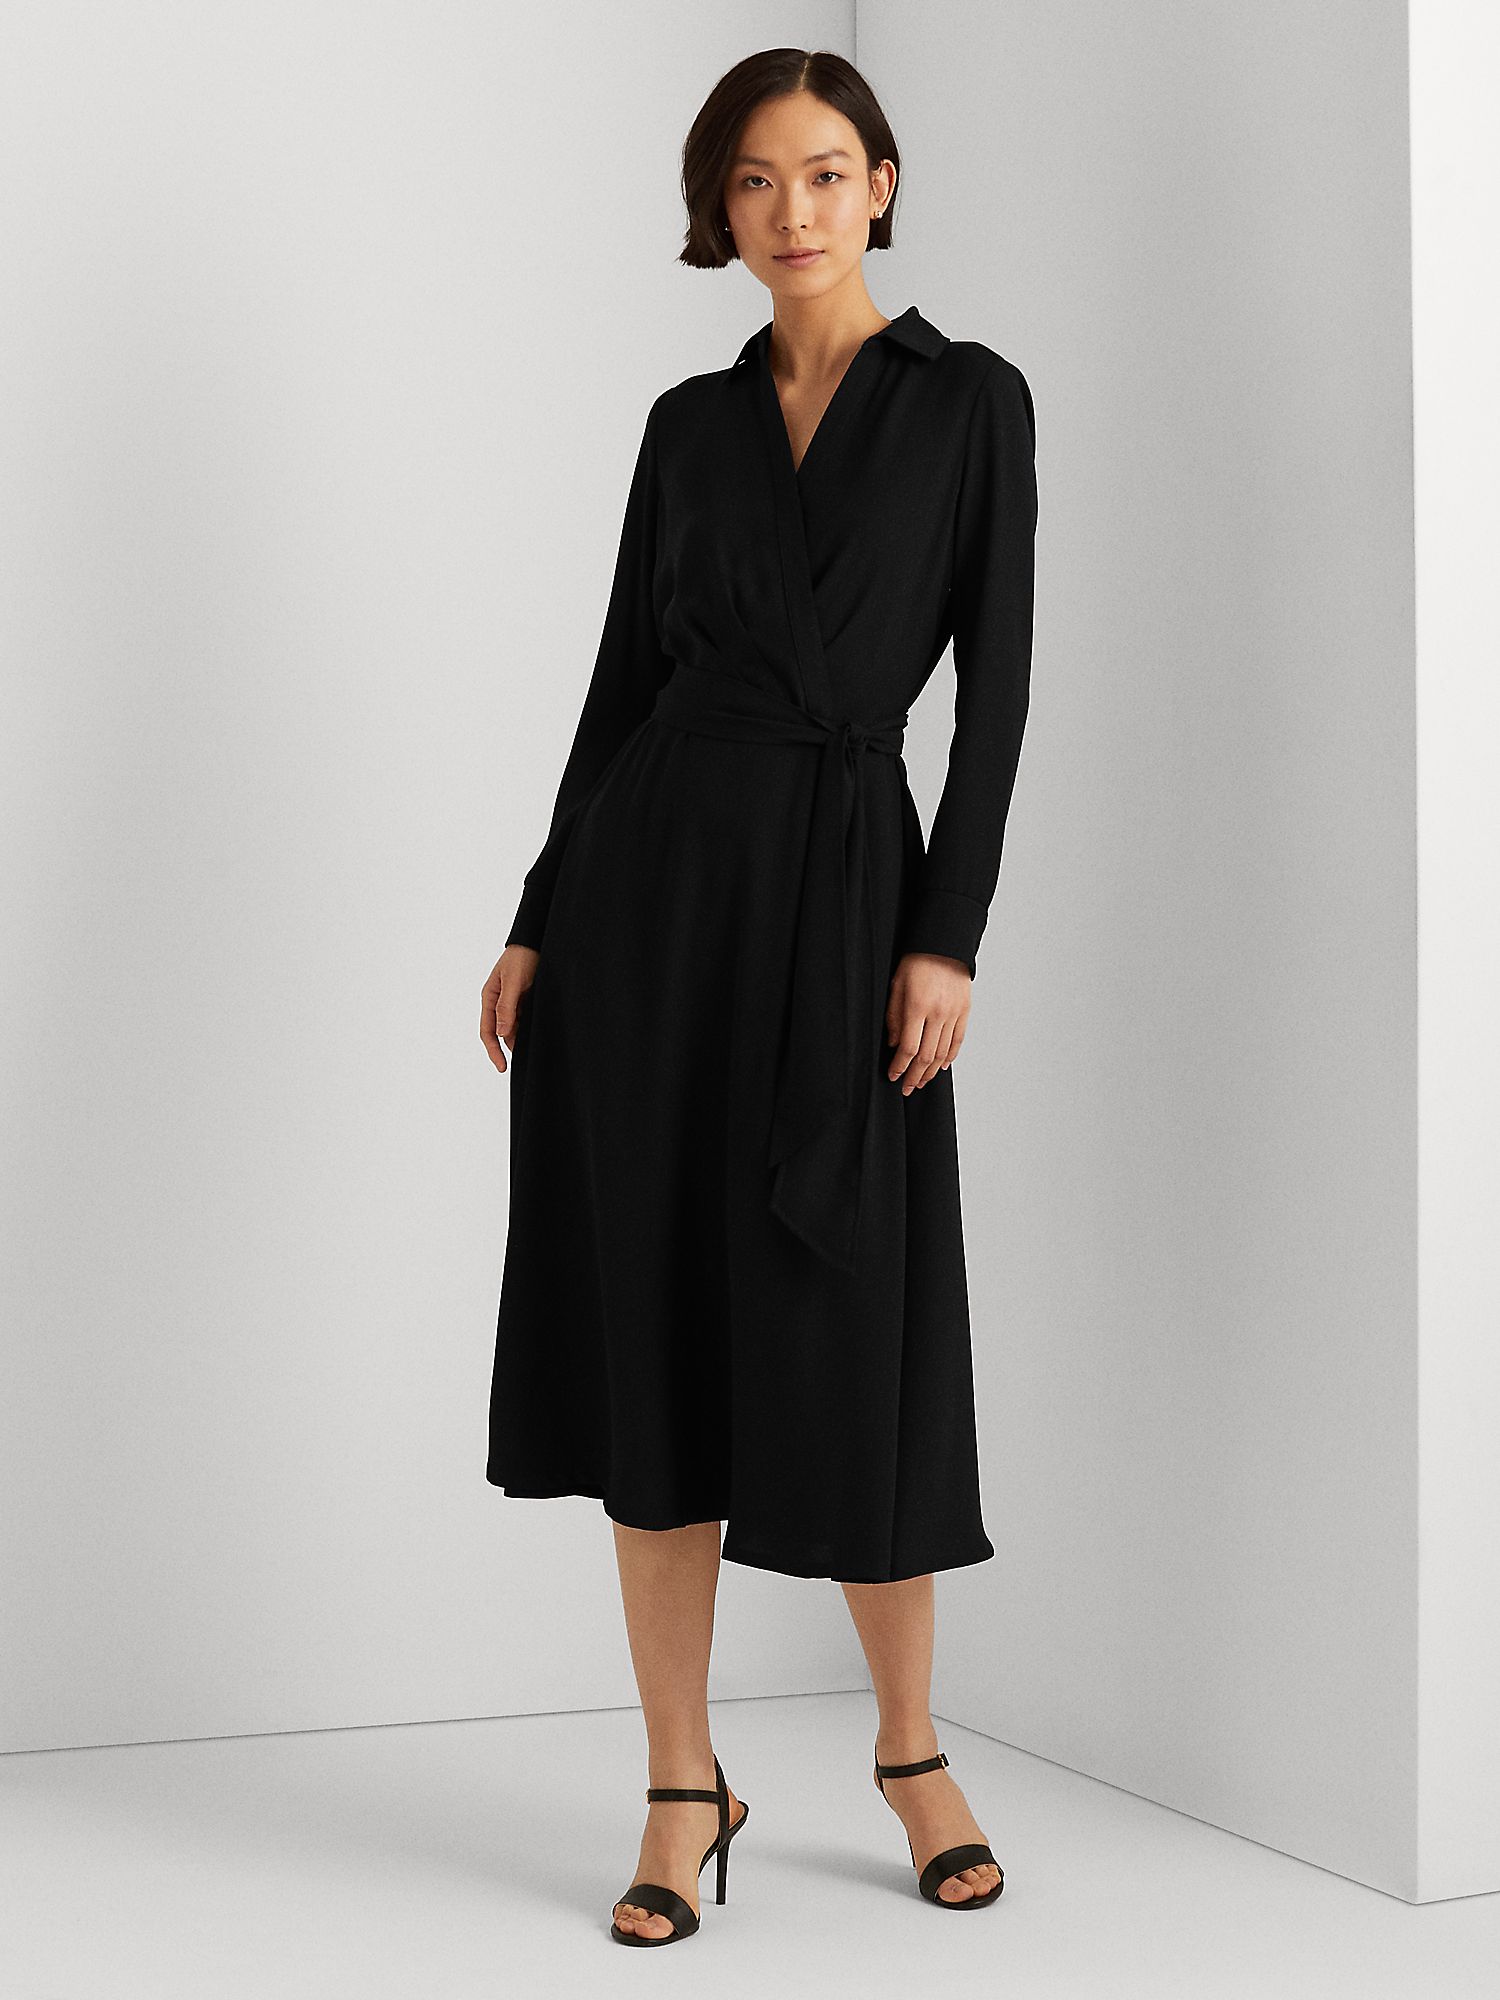 Ralph Lauren Rowella Dress, Black at John Lewis & Partners